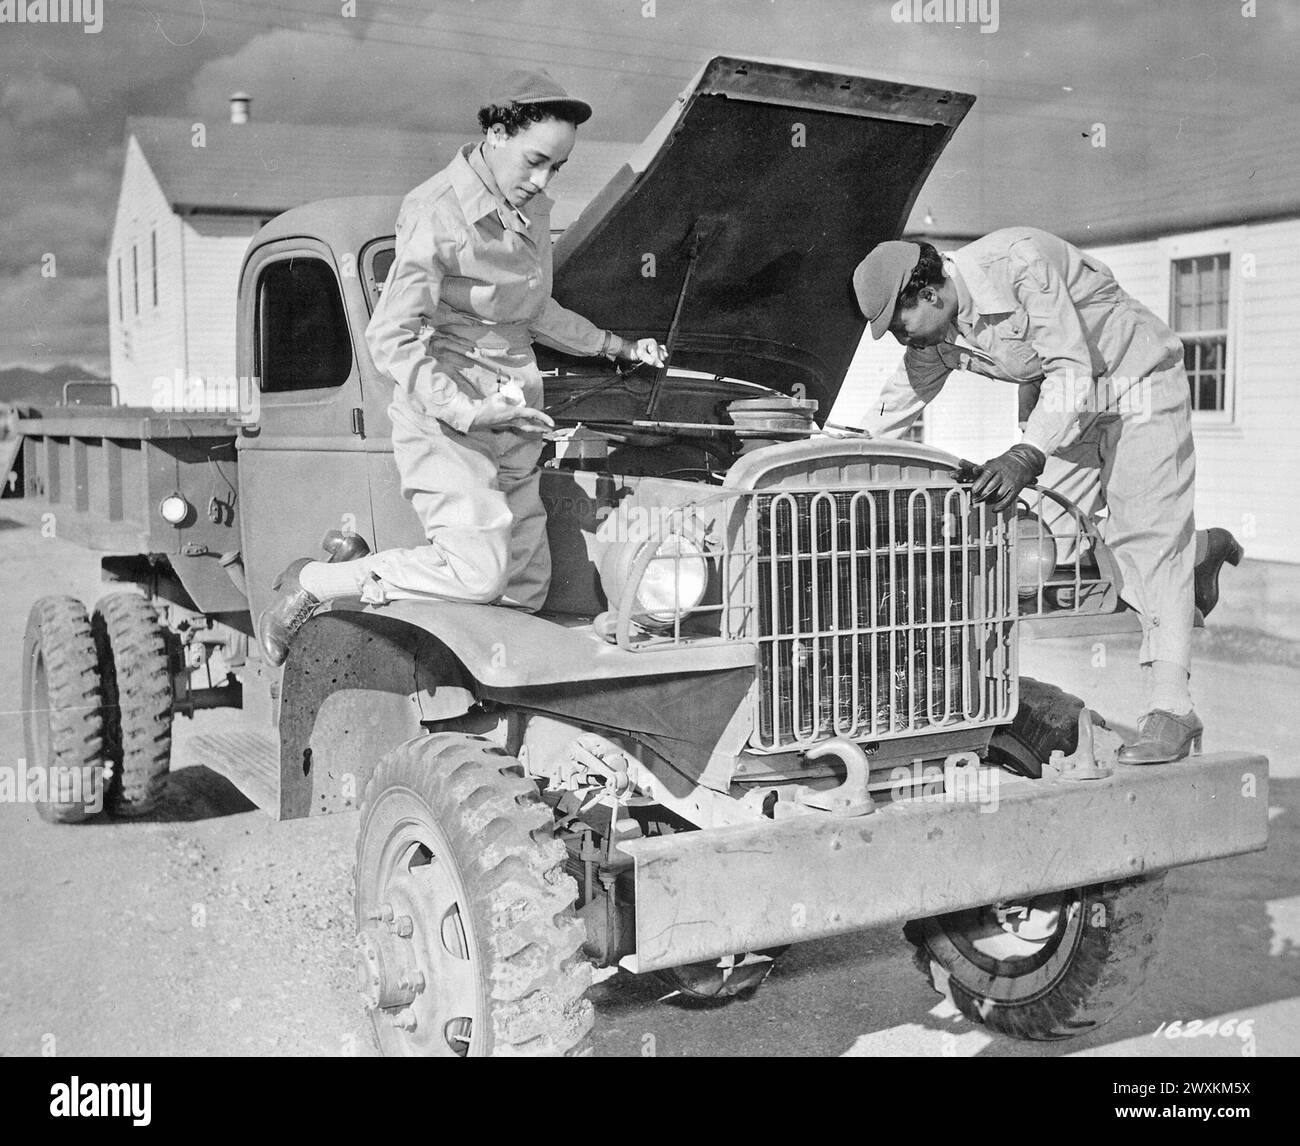 Gli ausiliari Ruth Wade e Lucille Mayo (da sinistra a destra) dimostrano ulteriormente la loro capacità di riparare i camion come insegnarono loro durante il periodo di lavorazione a Fort Des Moines e messi in pratica a Fort Huachuca, Arizona CA. 1942 Foto Stock